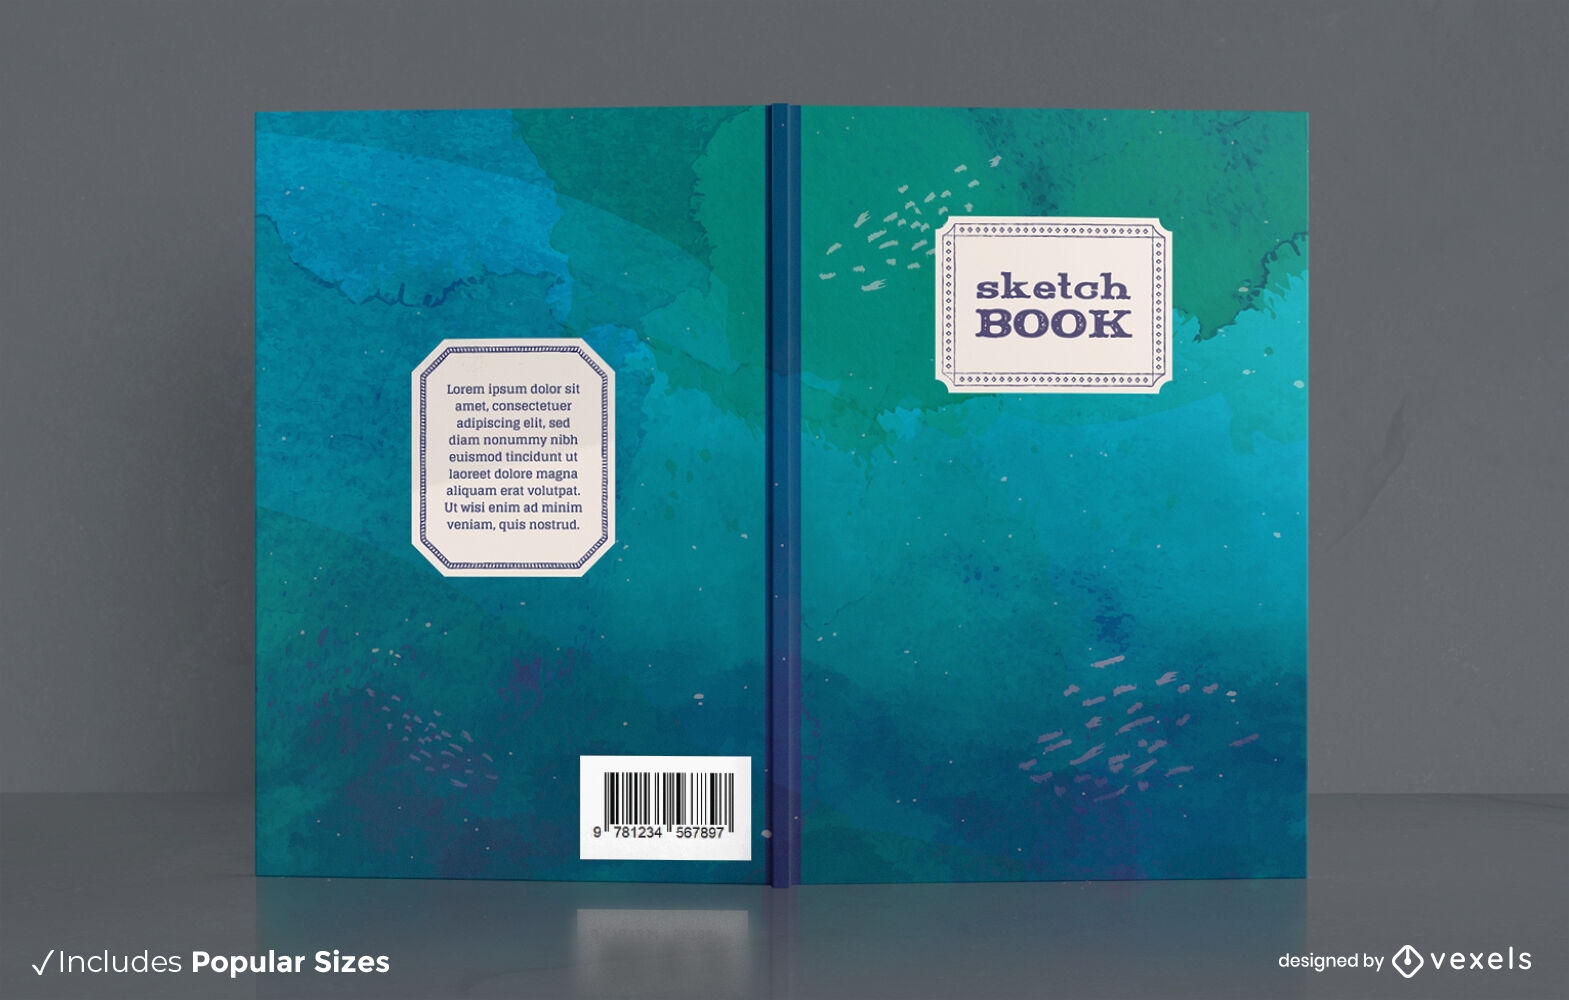 Desenhe o design da capa do livro em aquarela sobre o oceano